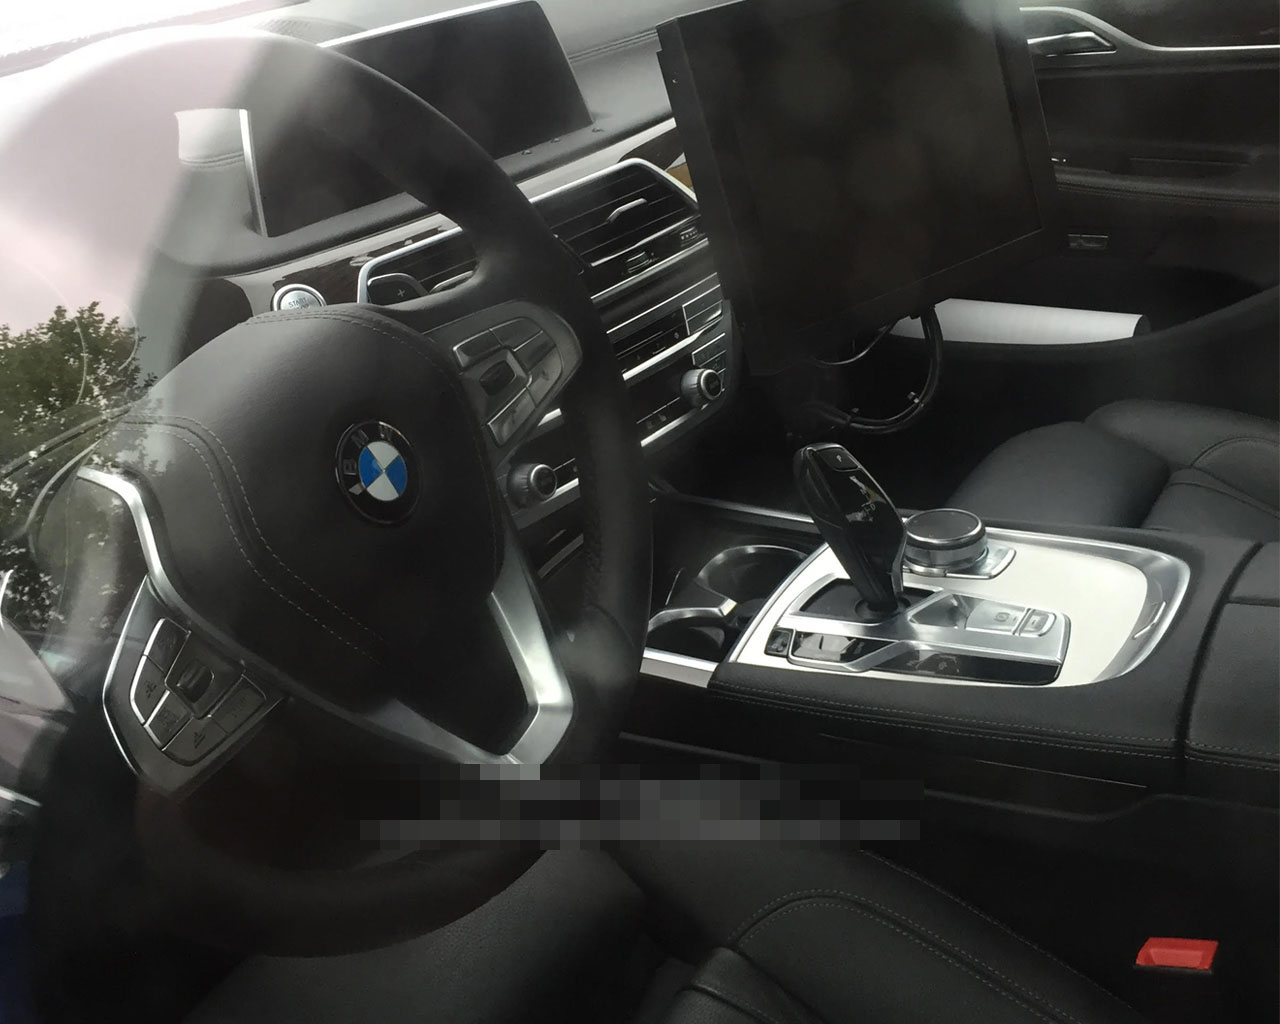 2017 BMW 5 Serisi i kabini grntlendi